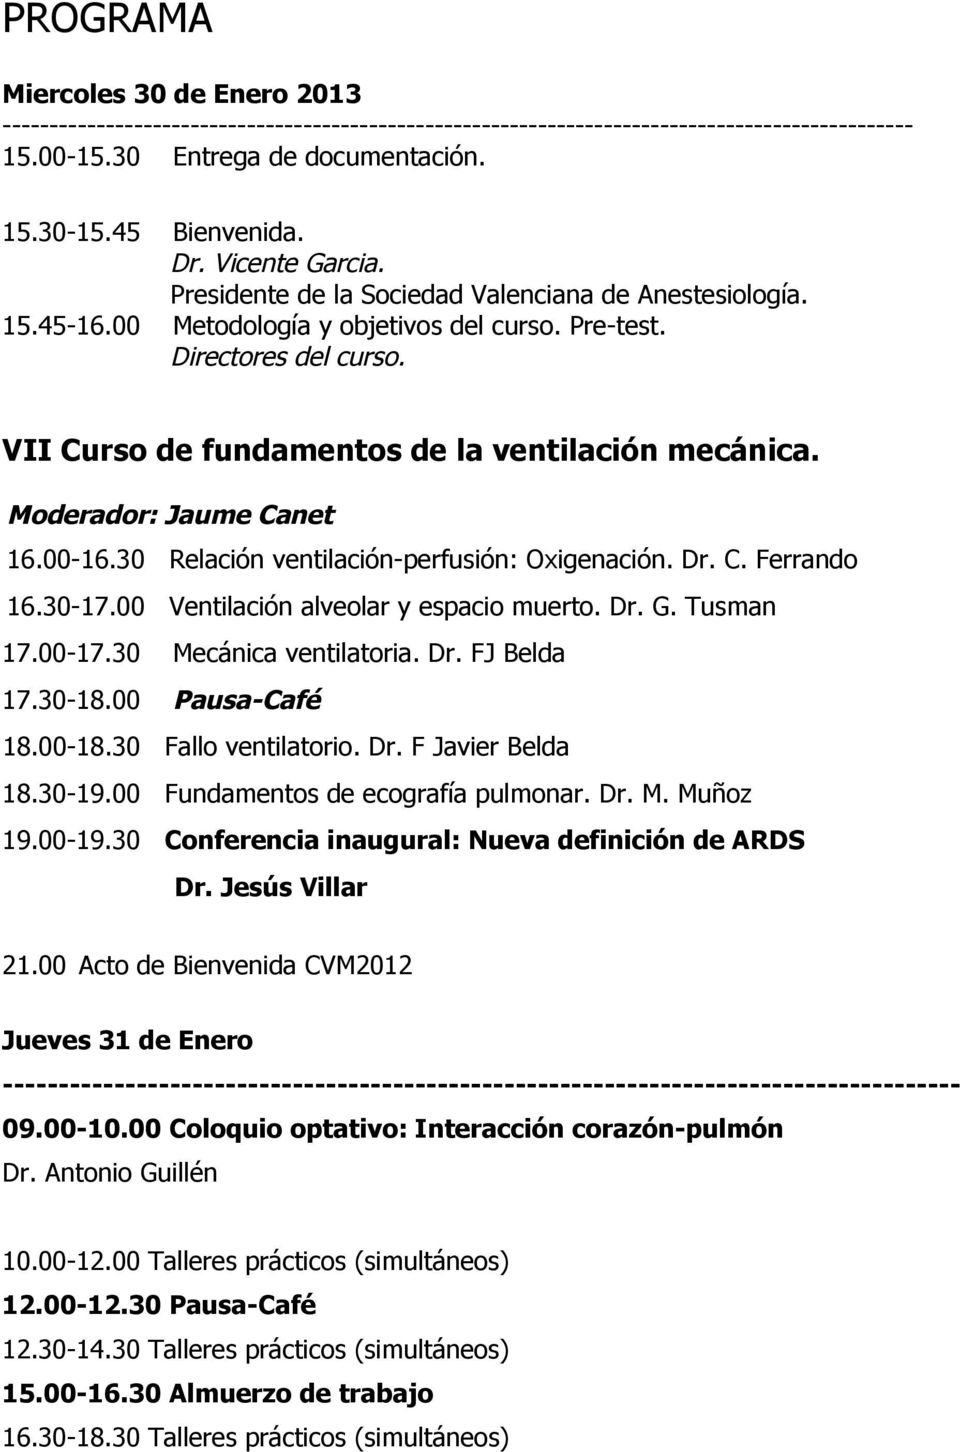 VII Curso de fundamentos de la ventilación mecánica. Moderador: Jaume Canet 16.00-16.30 Relación ventilación-perfusión: Oxigenación. Dr. C. Ferrando 16.30-17.00 Ventilación alveolar y espacio muerto.